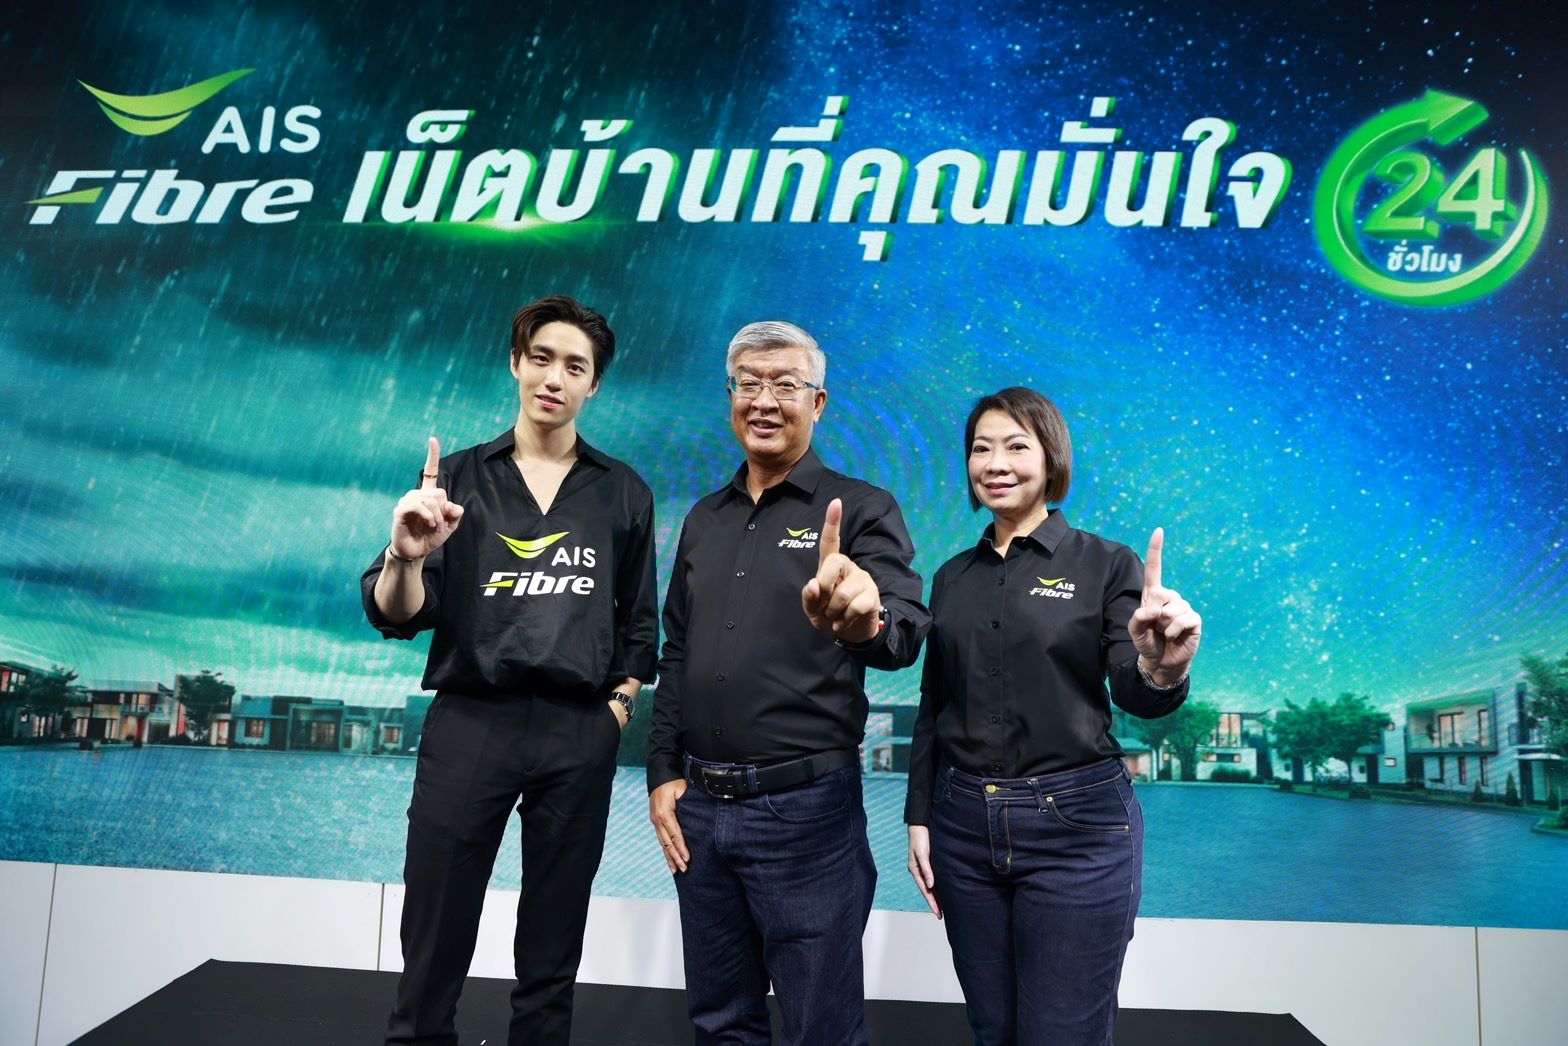 AIS Fibre ย้ำที่ 1 ตัวจริงในใจคนไทย พลิกโฉมวงการเน็ตบ้านกับ นวัตกรรมล่าสุด High Performance เราท์เตอร์ มอบความเร็วระดับ 2Gbps ได้เต็มๆ ครั้งแรกในไทย!